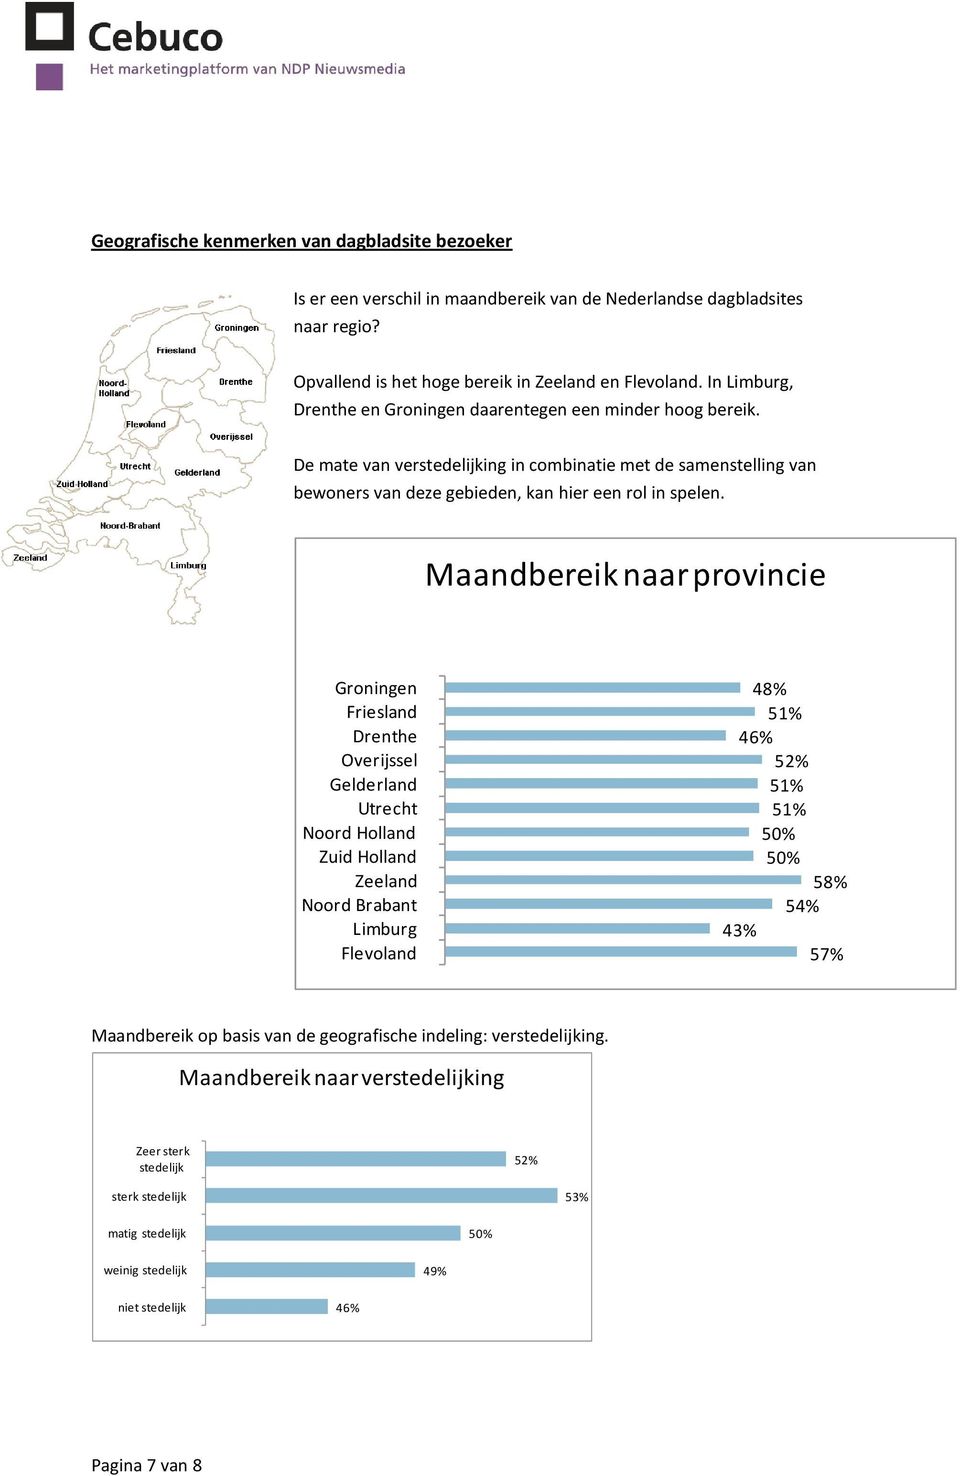 Maandbereik naar provincie Groningen Friesland Drenthe Overijssel Gelderland Utrecht Noord Holland Zuid Holland Zeeland Noord Brabant Limburg Flevoland 48% 51% 46% 51% 51% 58% 54% 43% 57%